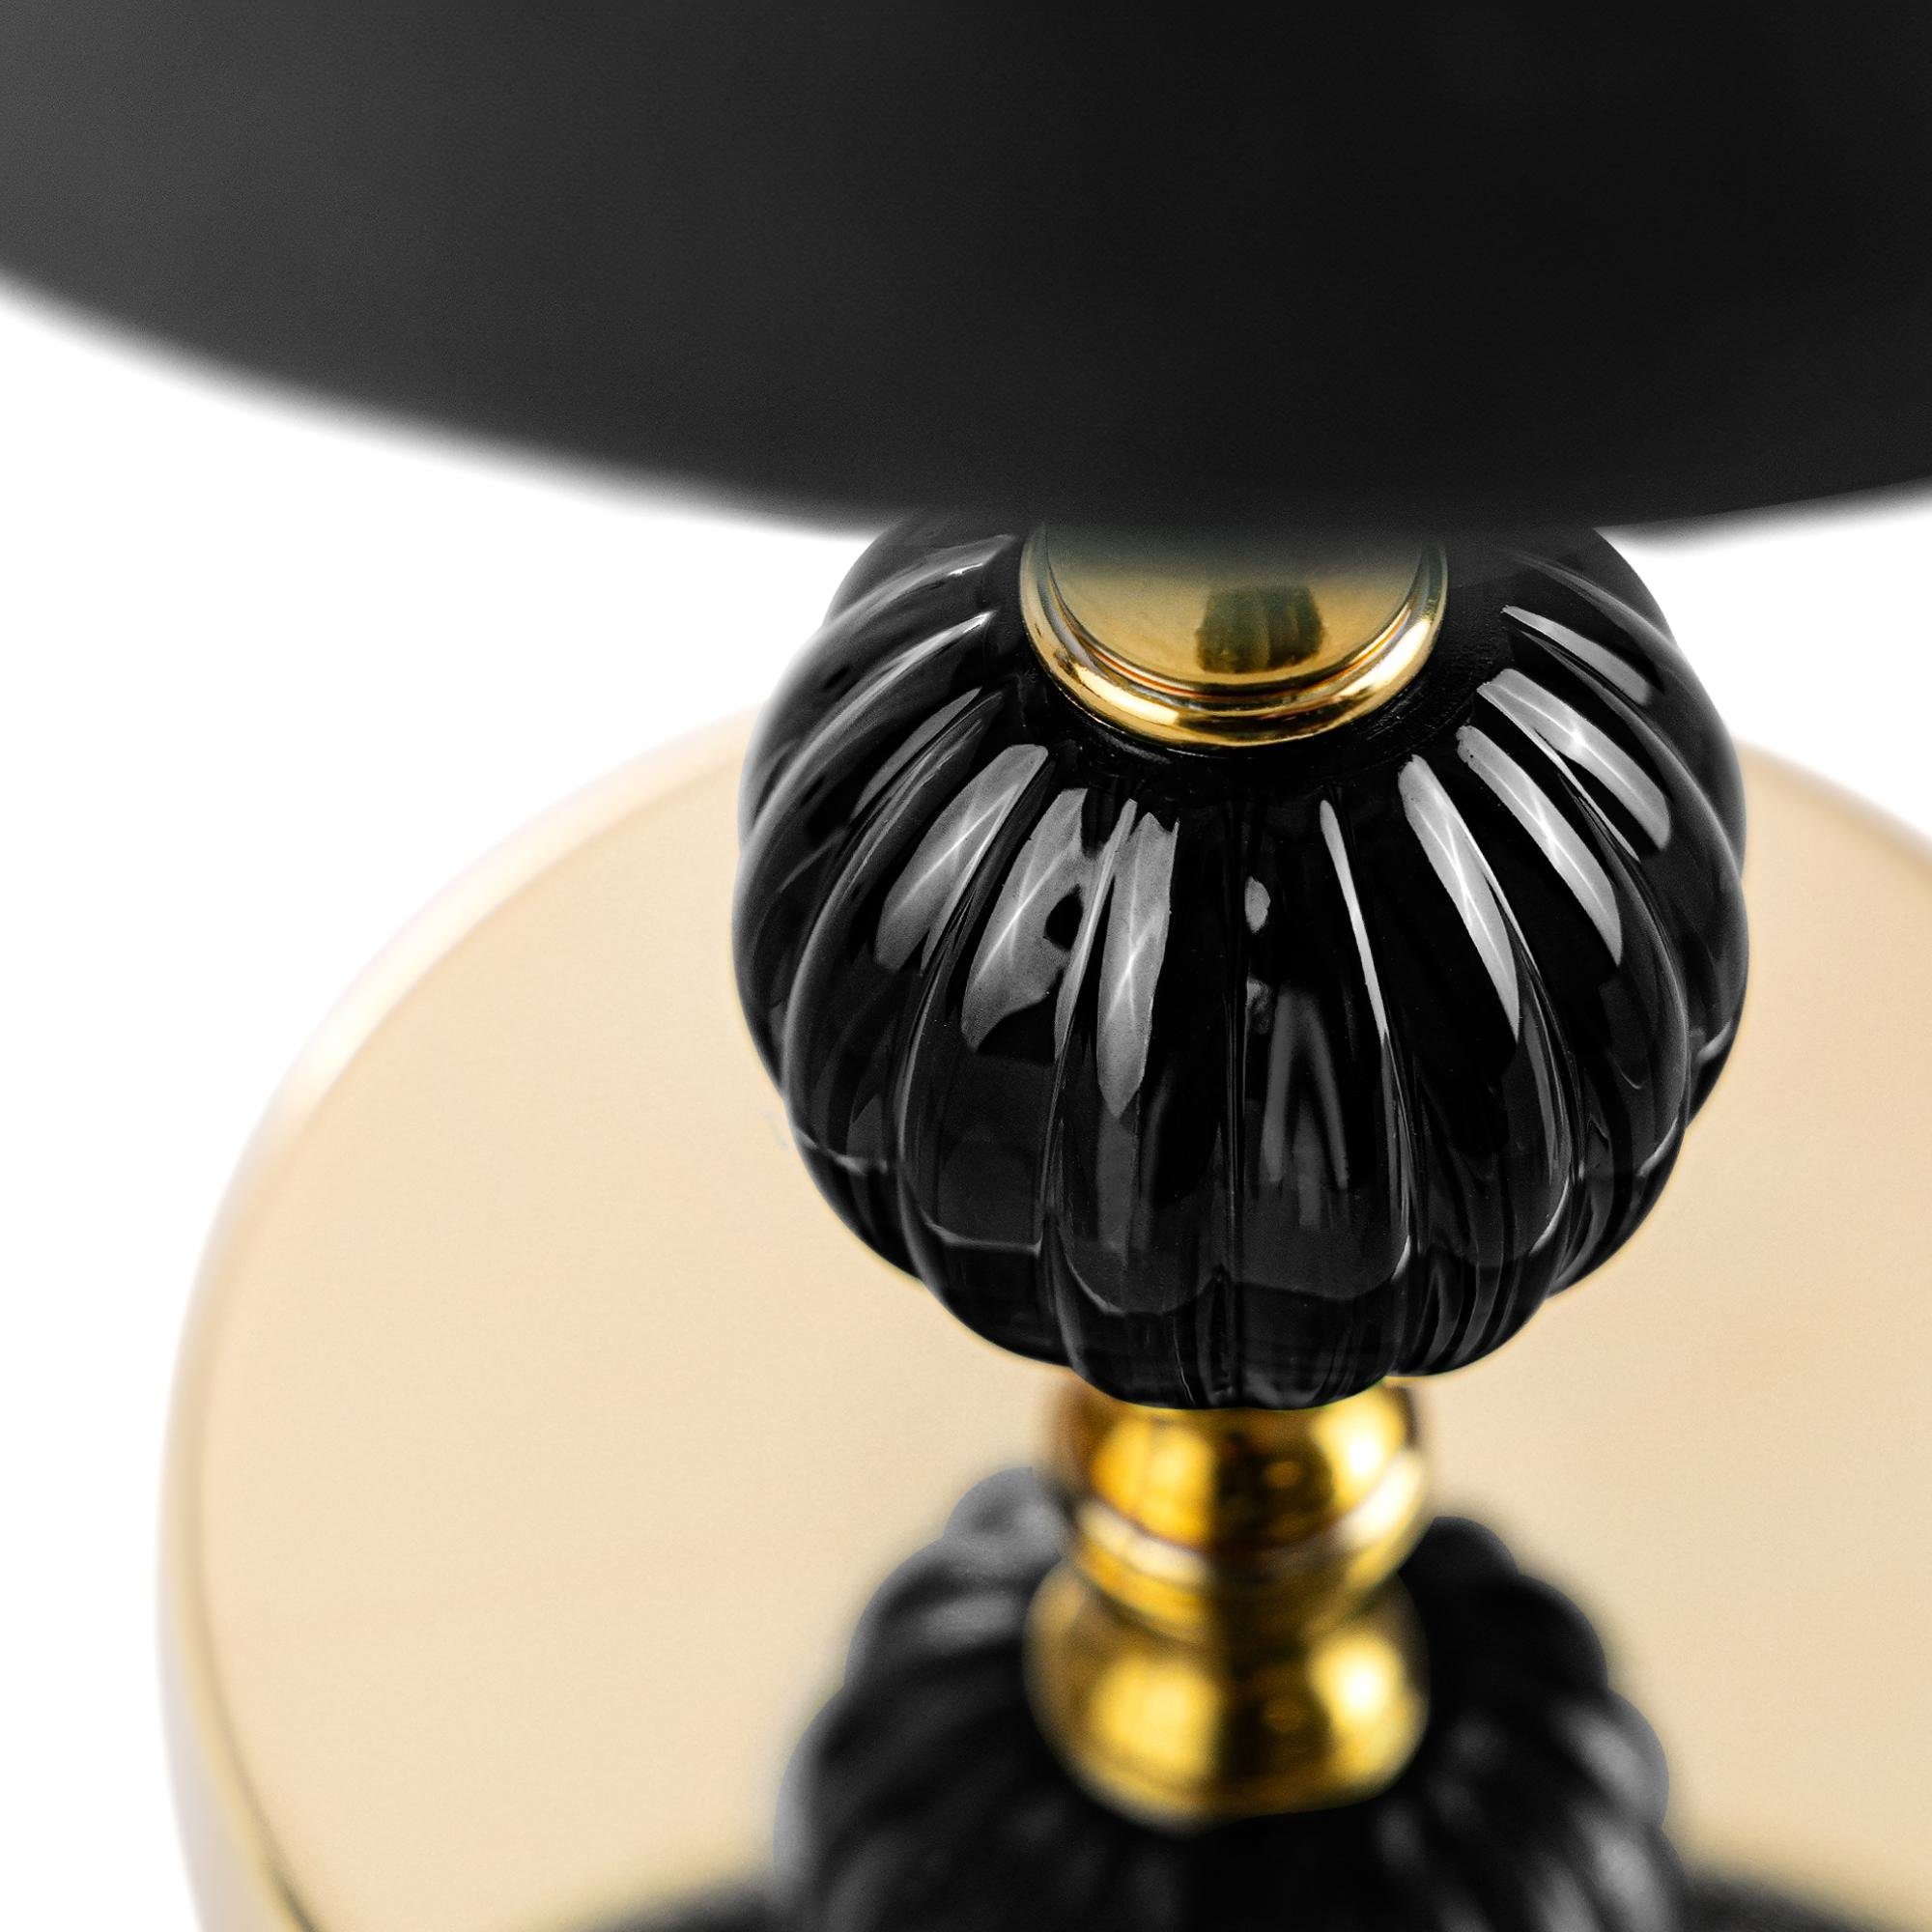 Konsimo Tischleuchte VULGA Tischlampe Lampe Tischleuchte, ohne elegante Leuchtmittel, schwarz/gold